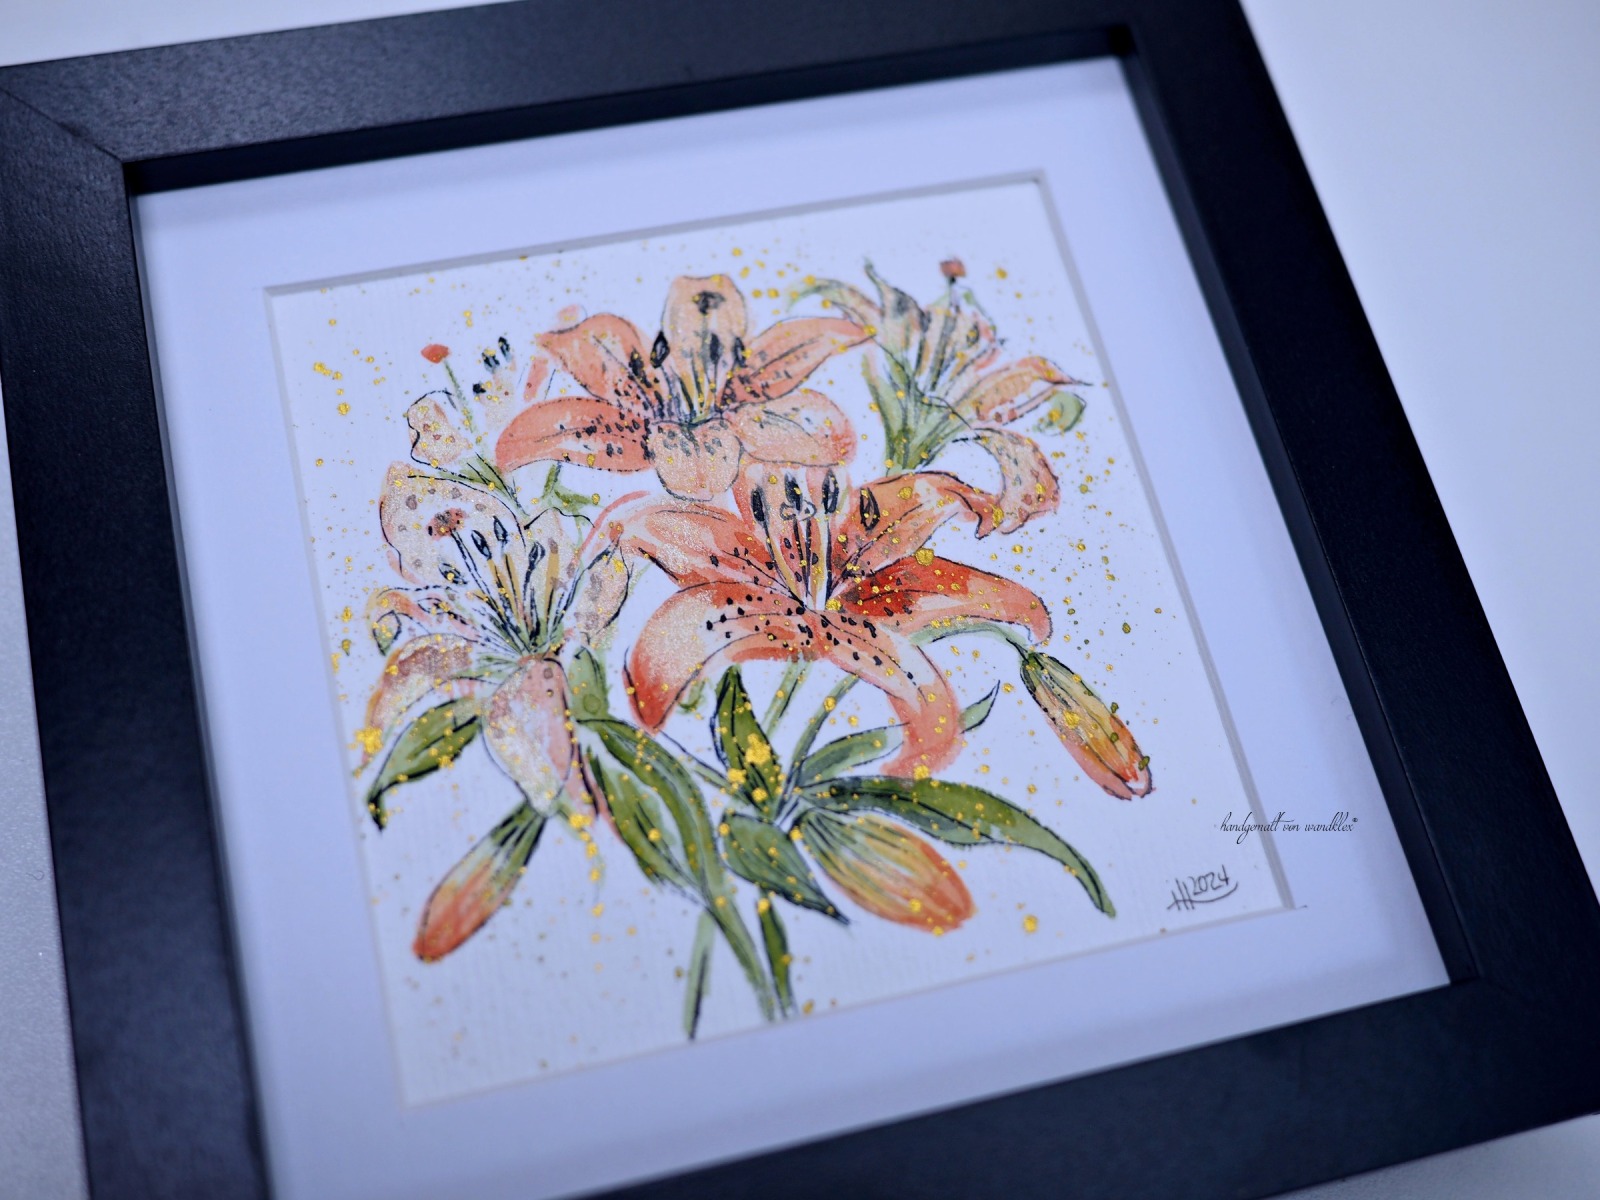 Feuerlilie Illustration handgemalt, gerahmt in Minirahmen 5